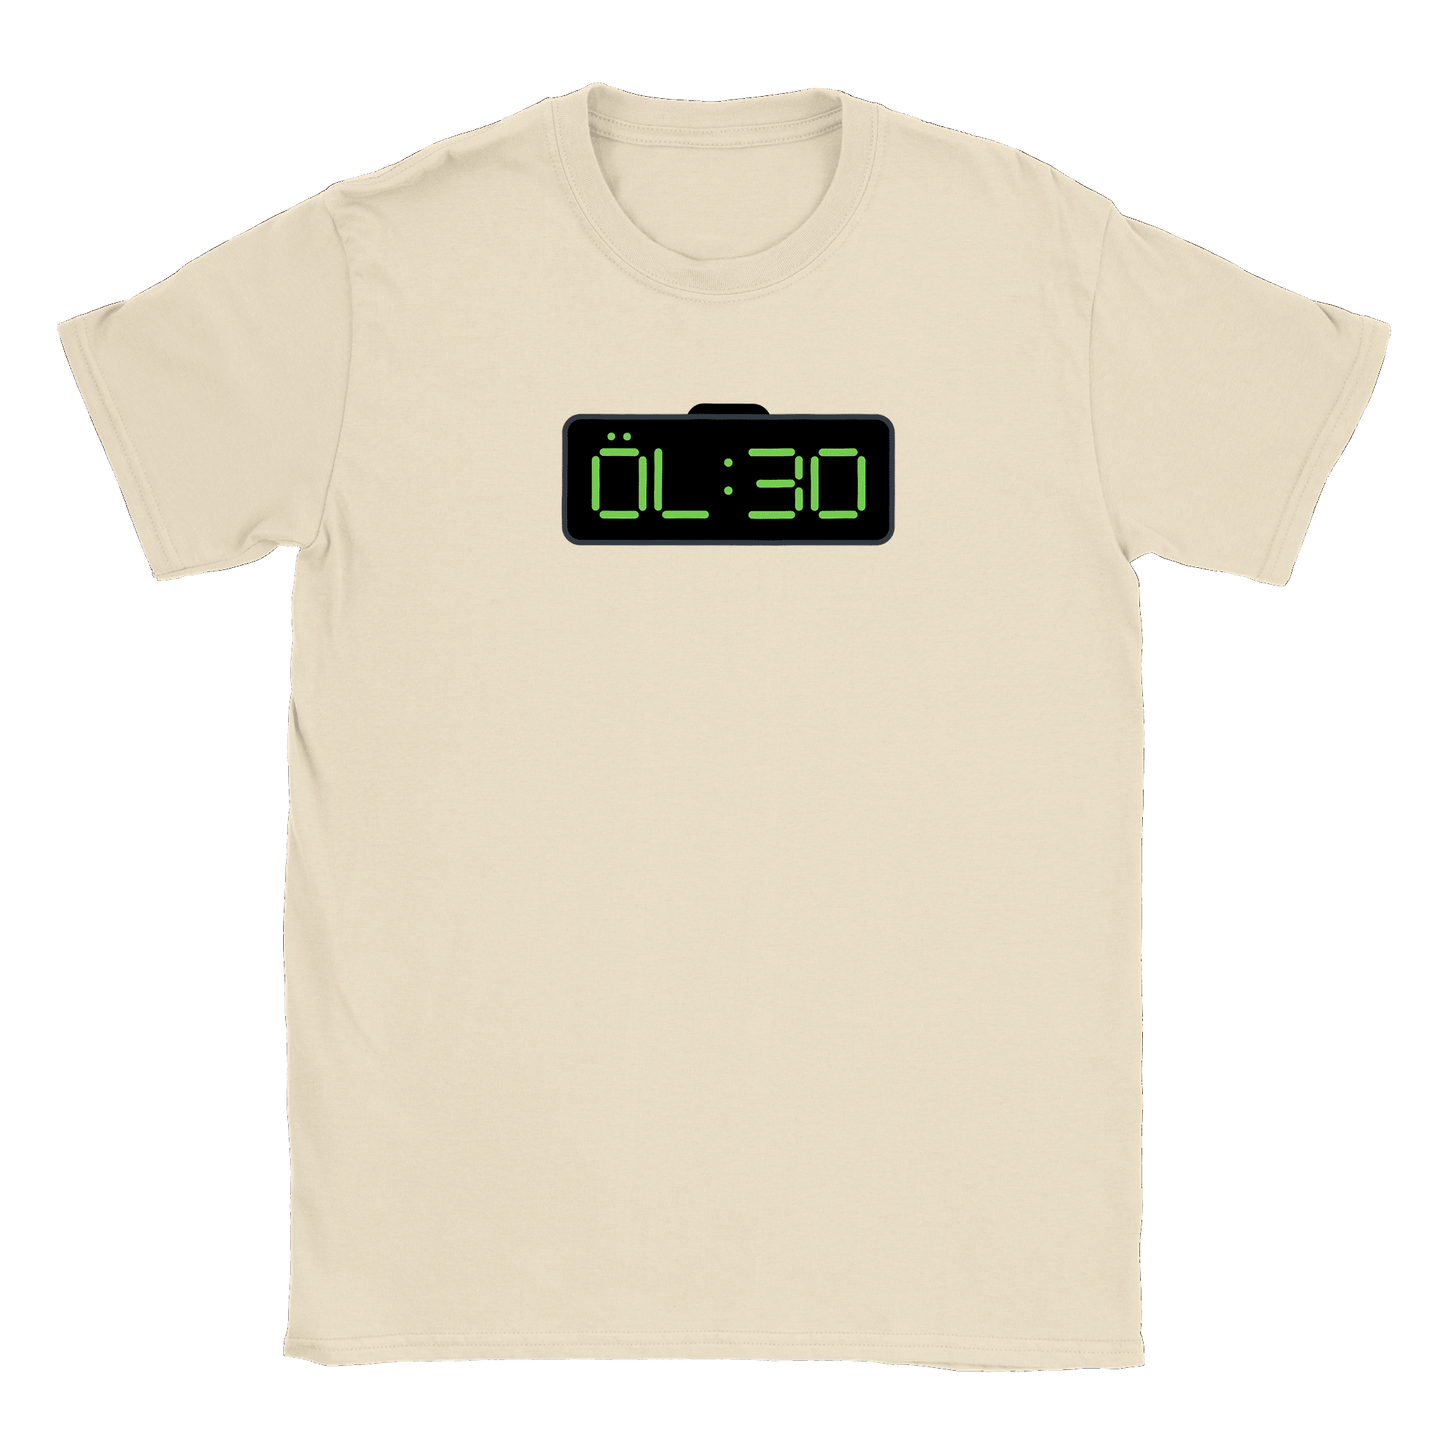 ÖL 30 - T-shirt Natural